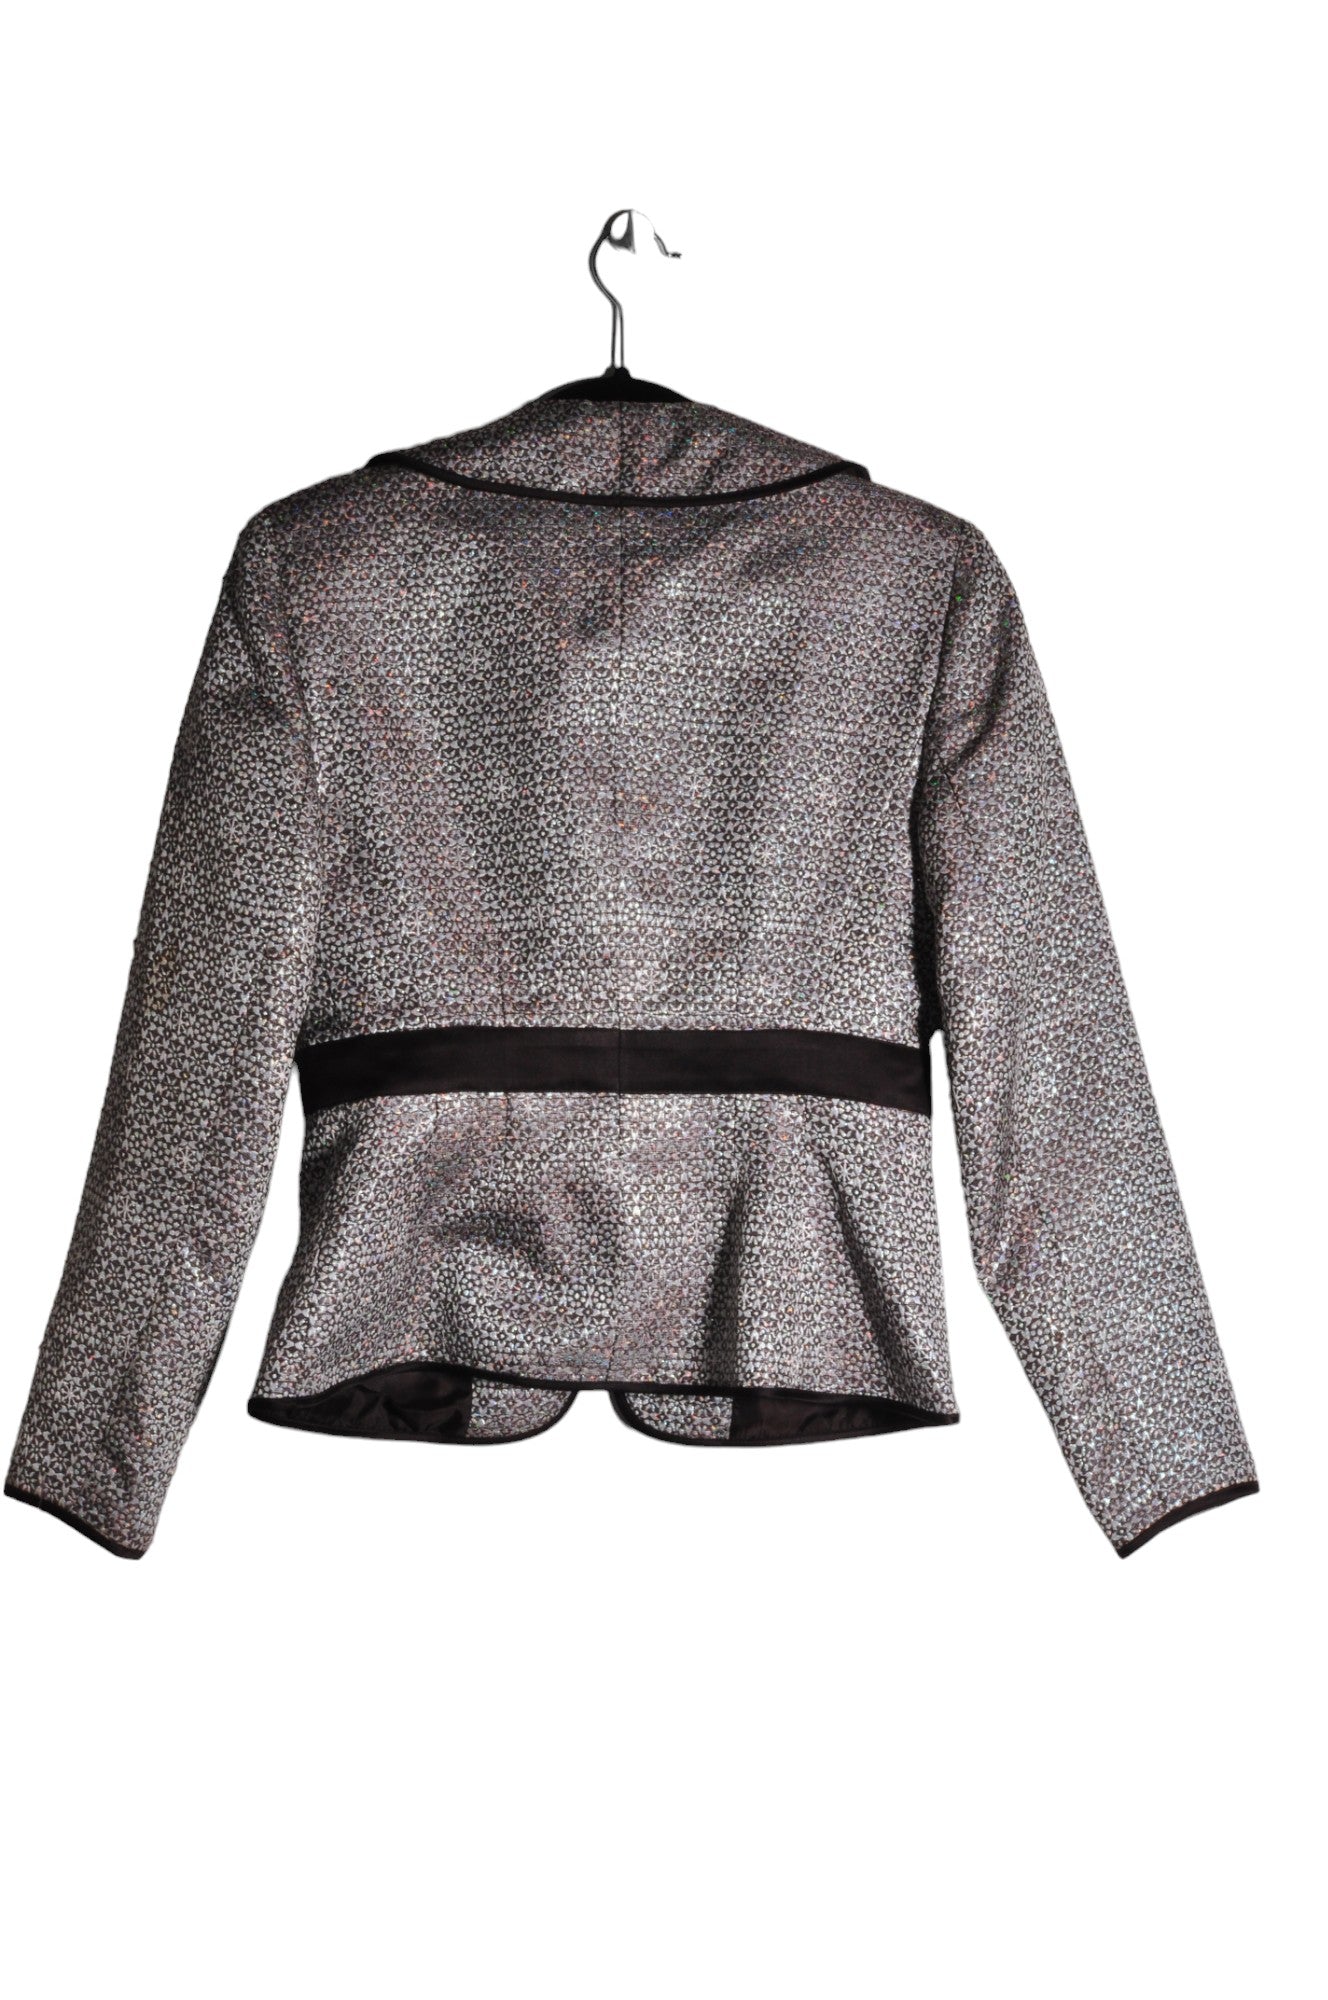 ALLEN Blazers Regular fit in Gray - Size 6 | 18 $ KOOP